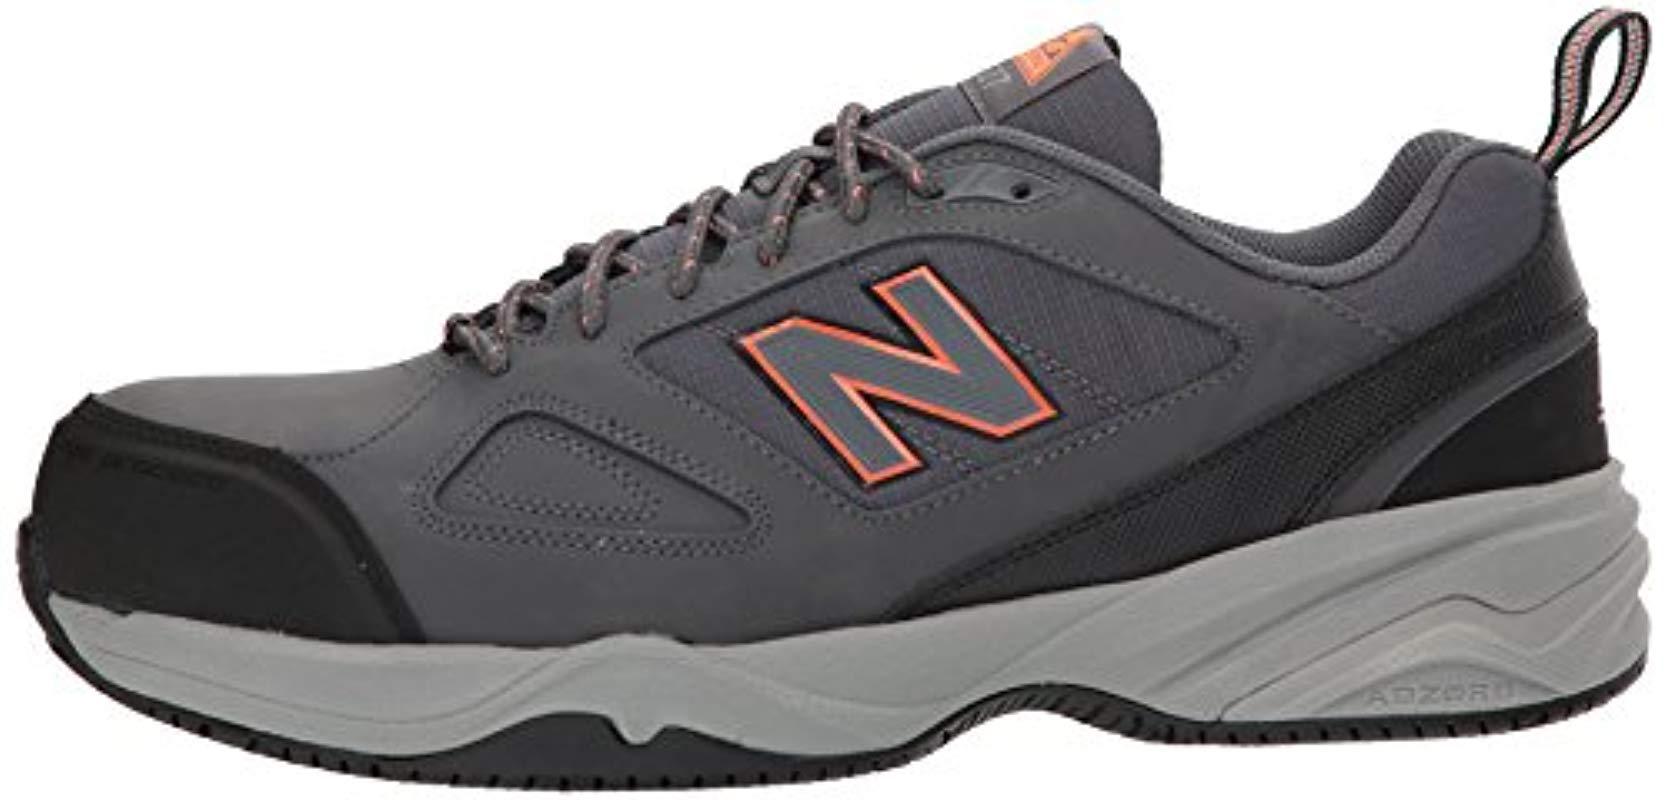 New Balance 627v2 Work Training Shoe in Grey-Orange (Gray) for Men ...